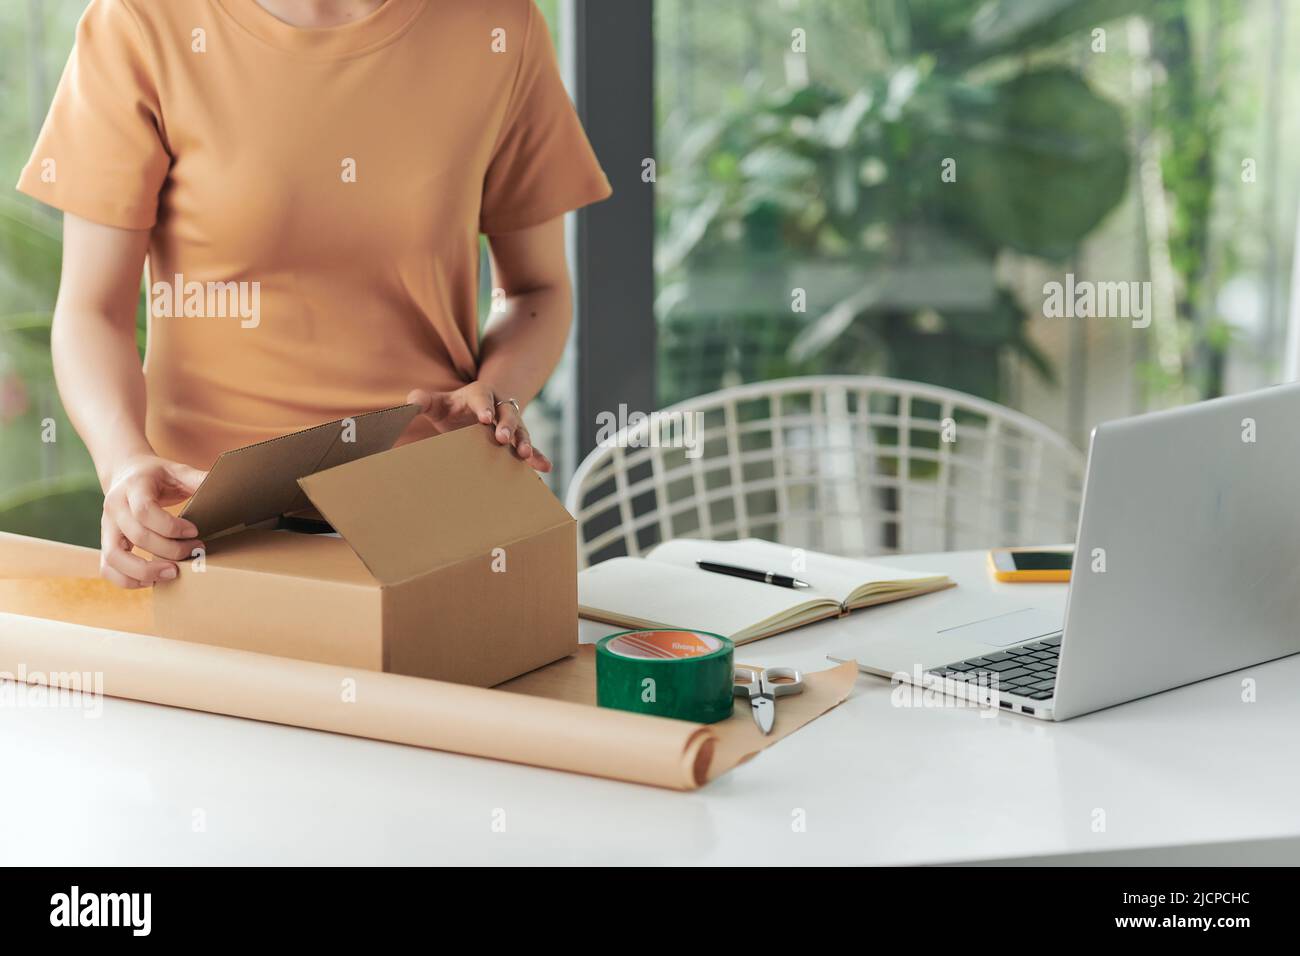 Privates Geschäftskonzept. Eine Frau, die mit einem Verpackungskarton für die Lieferung im Home-Office arbeitet. Stockfoto